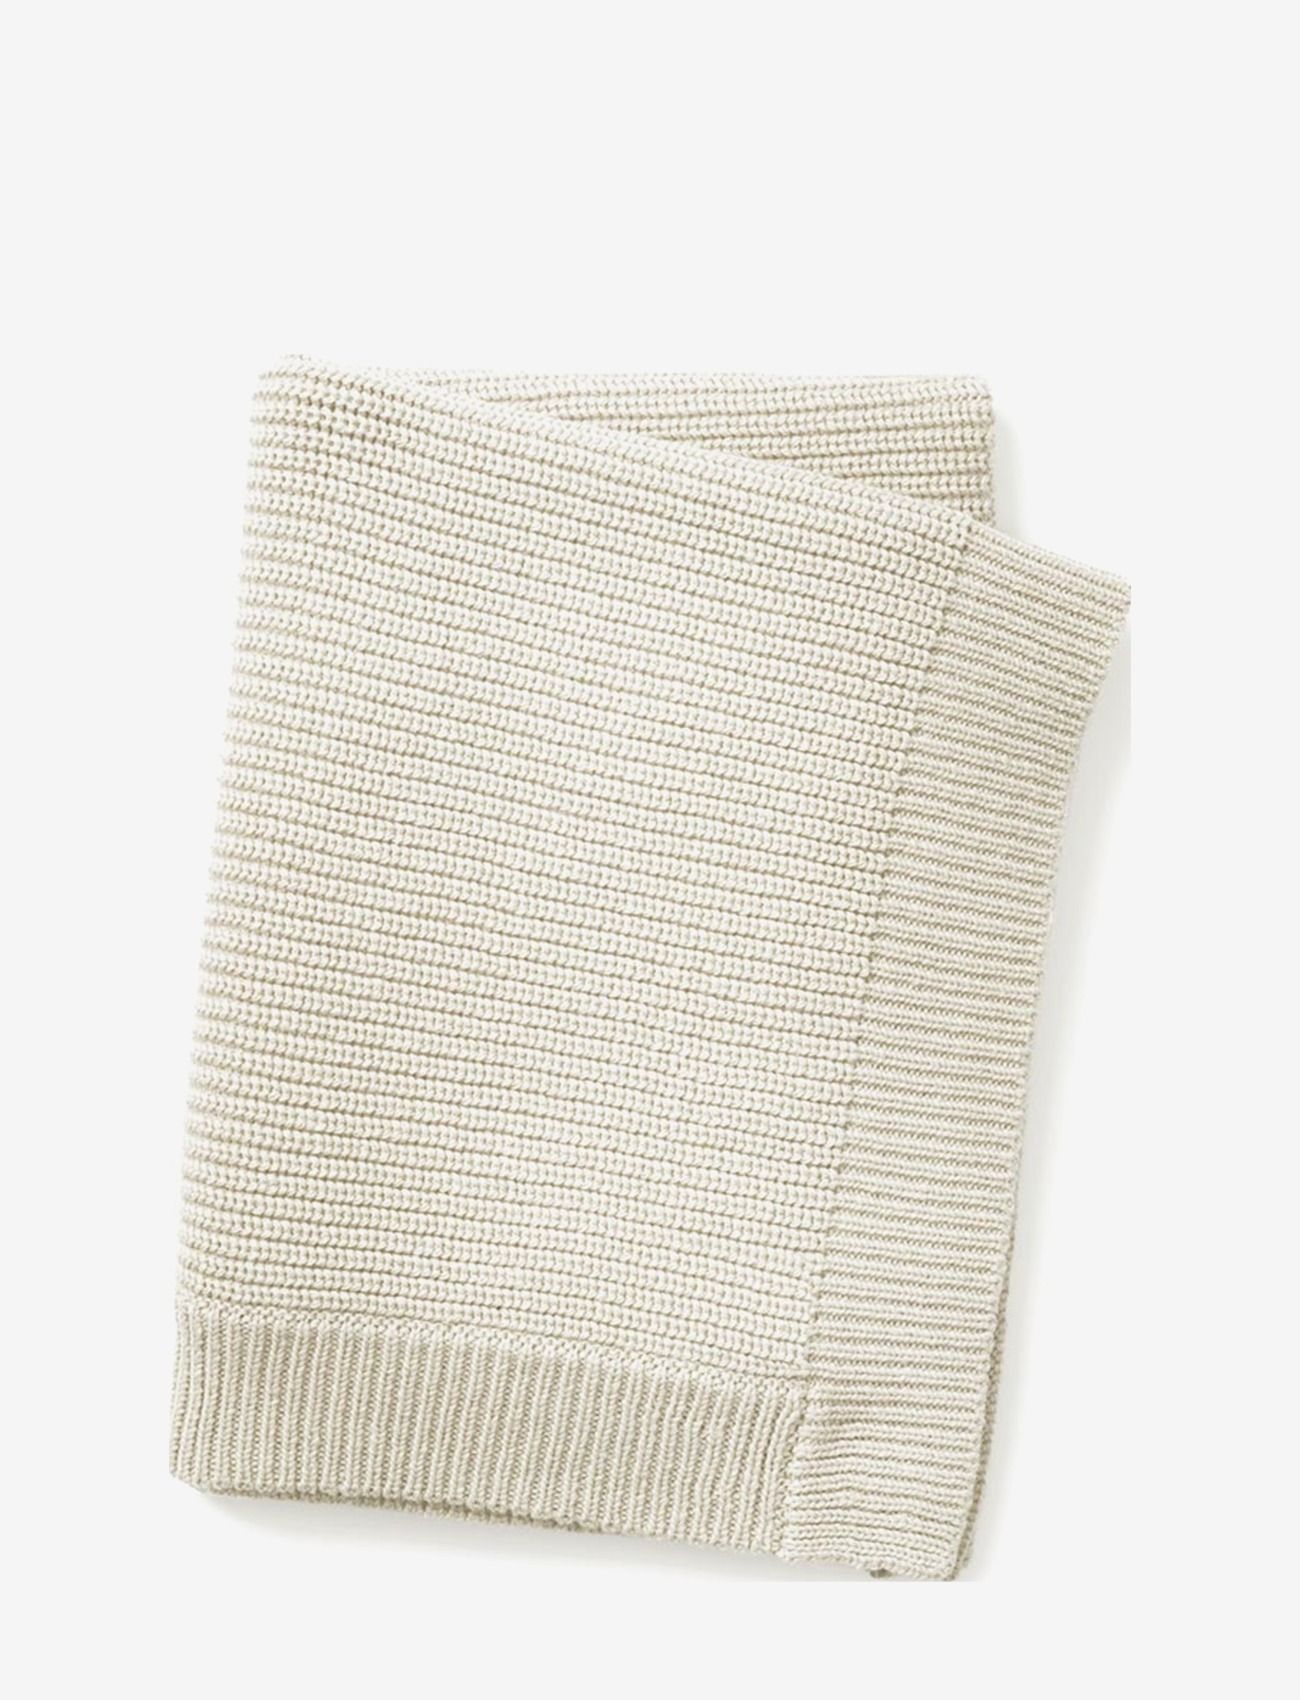 Elodie Details - Wool Knitted Blanket - Vanilla White - blankets - vanilla white - 1